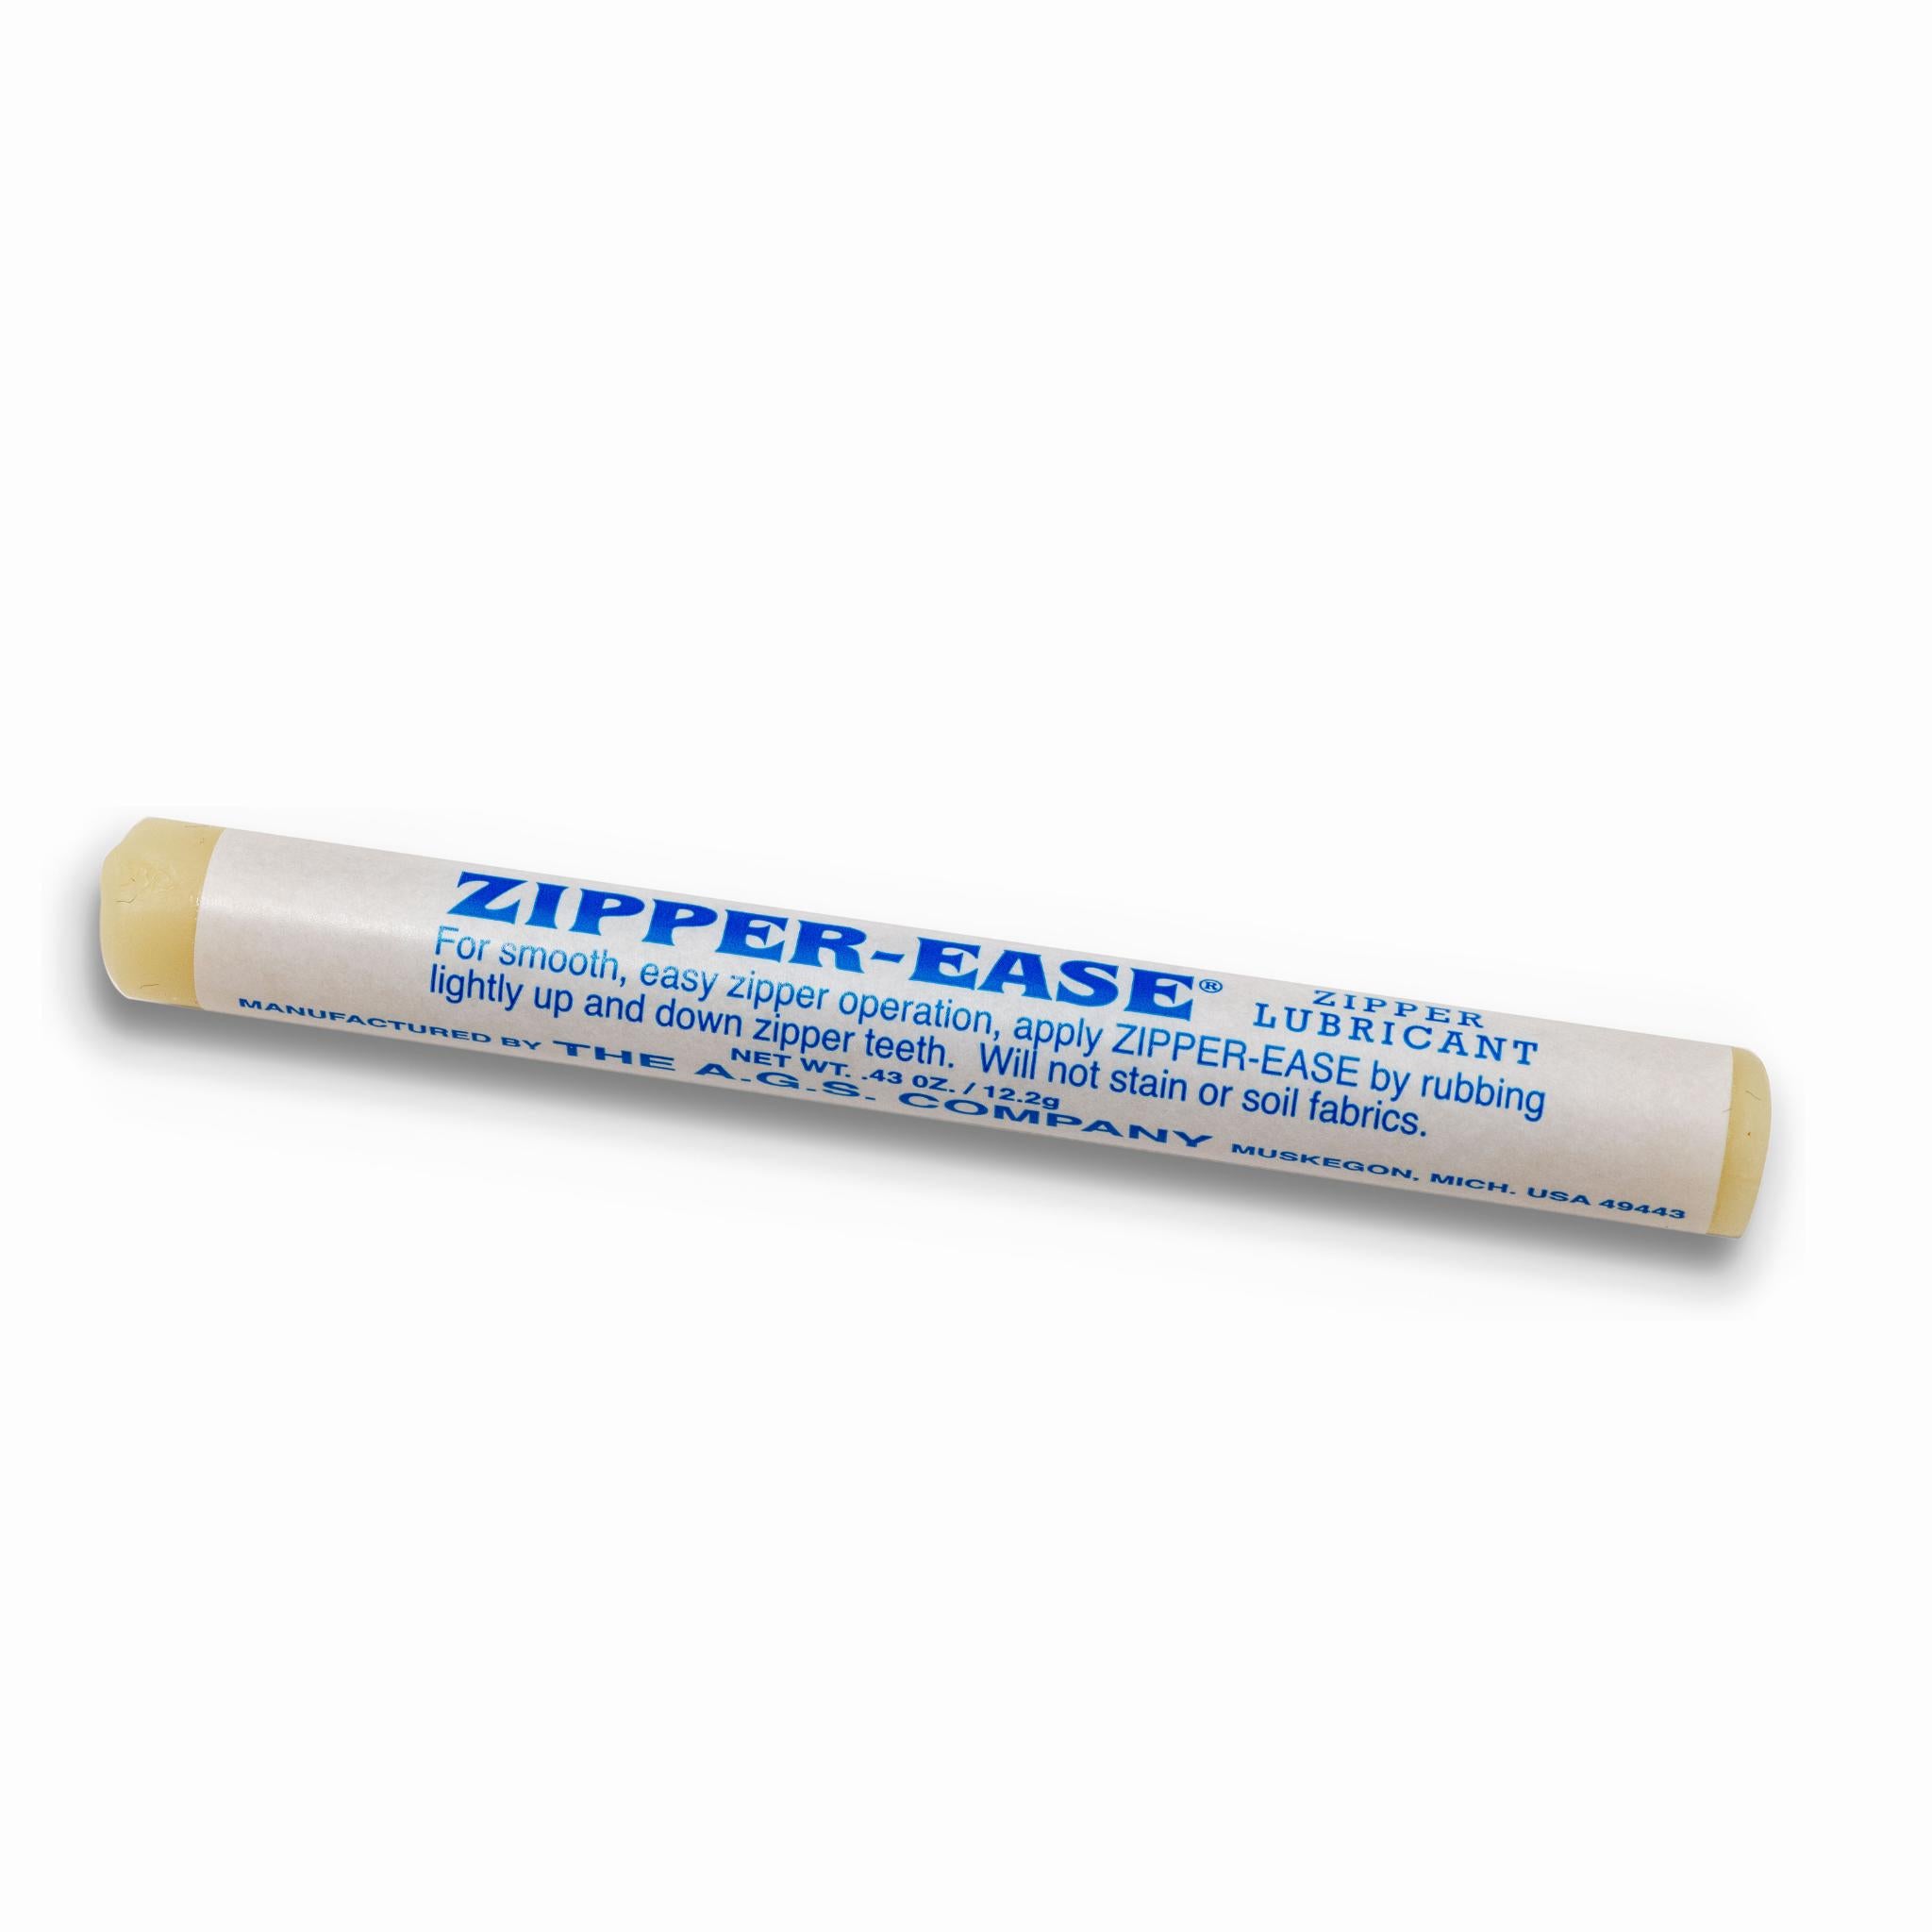 Zipper-Ease